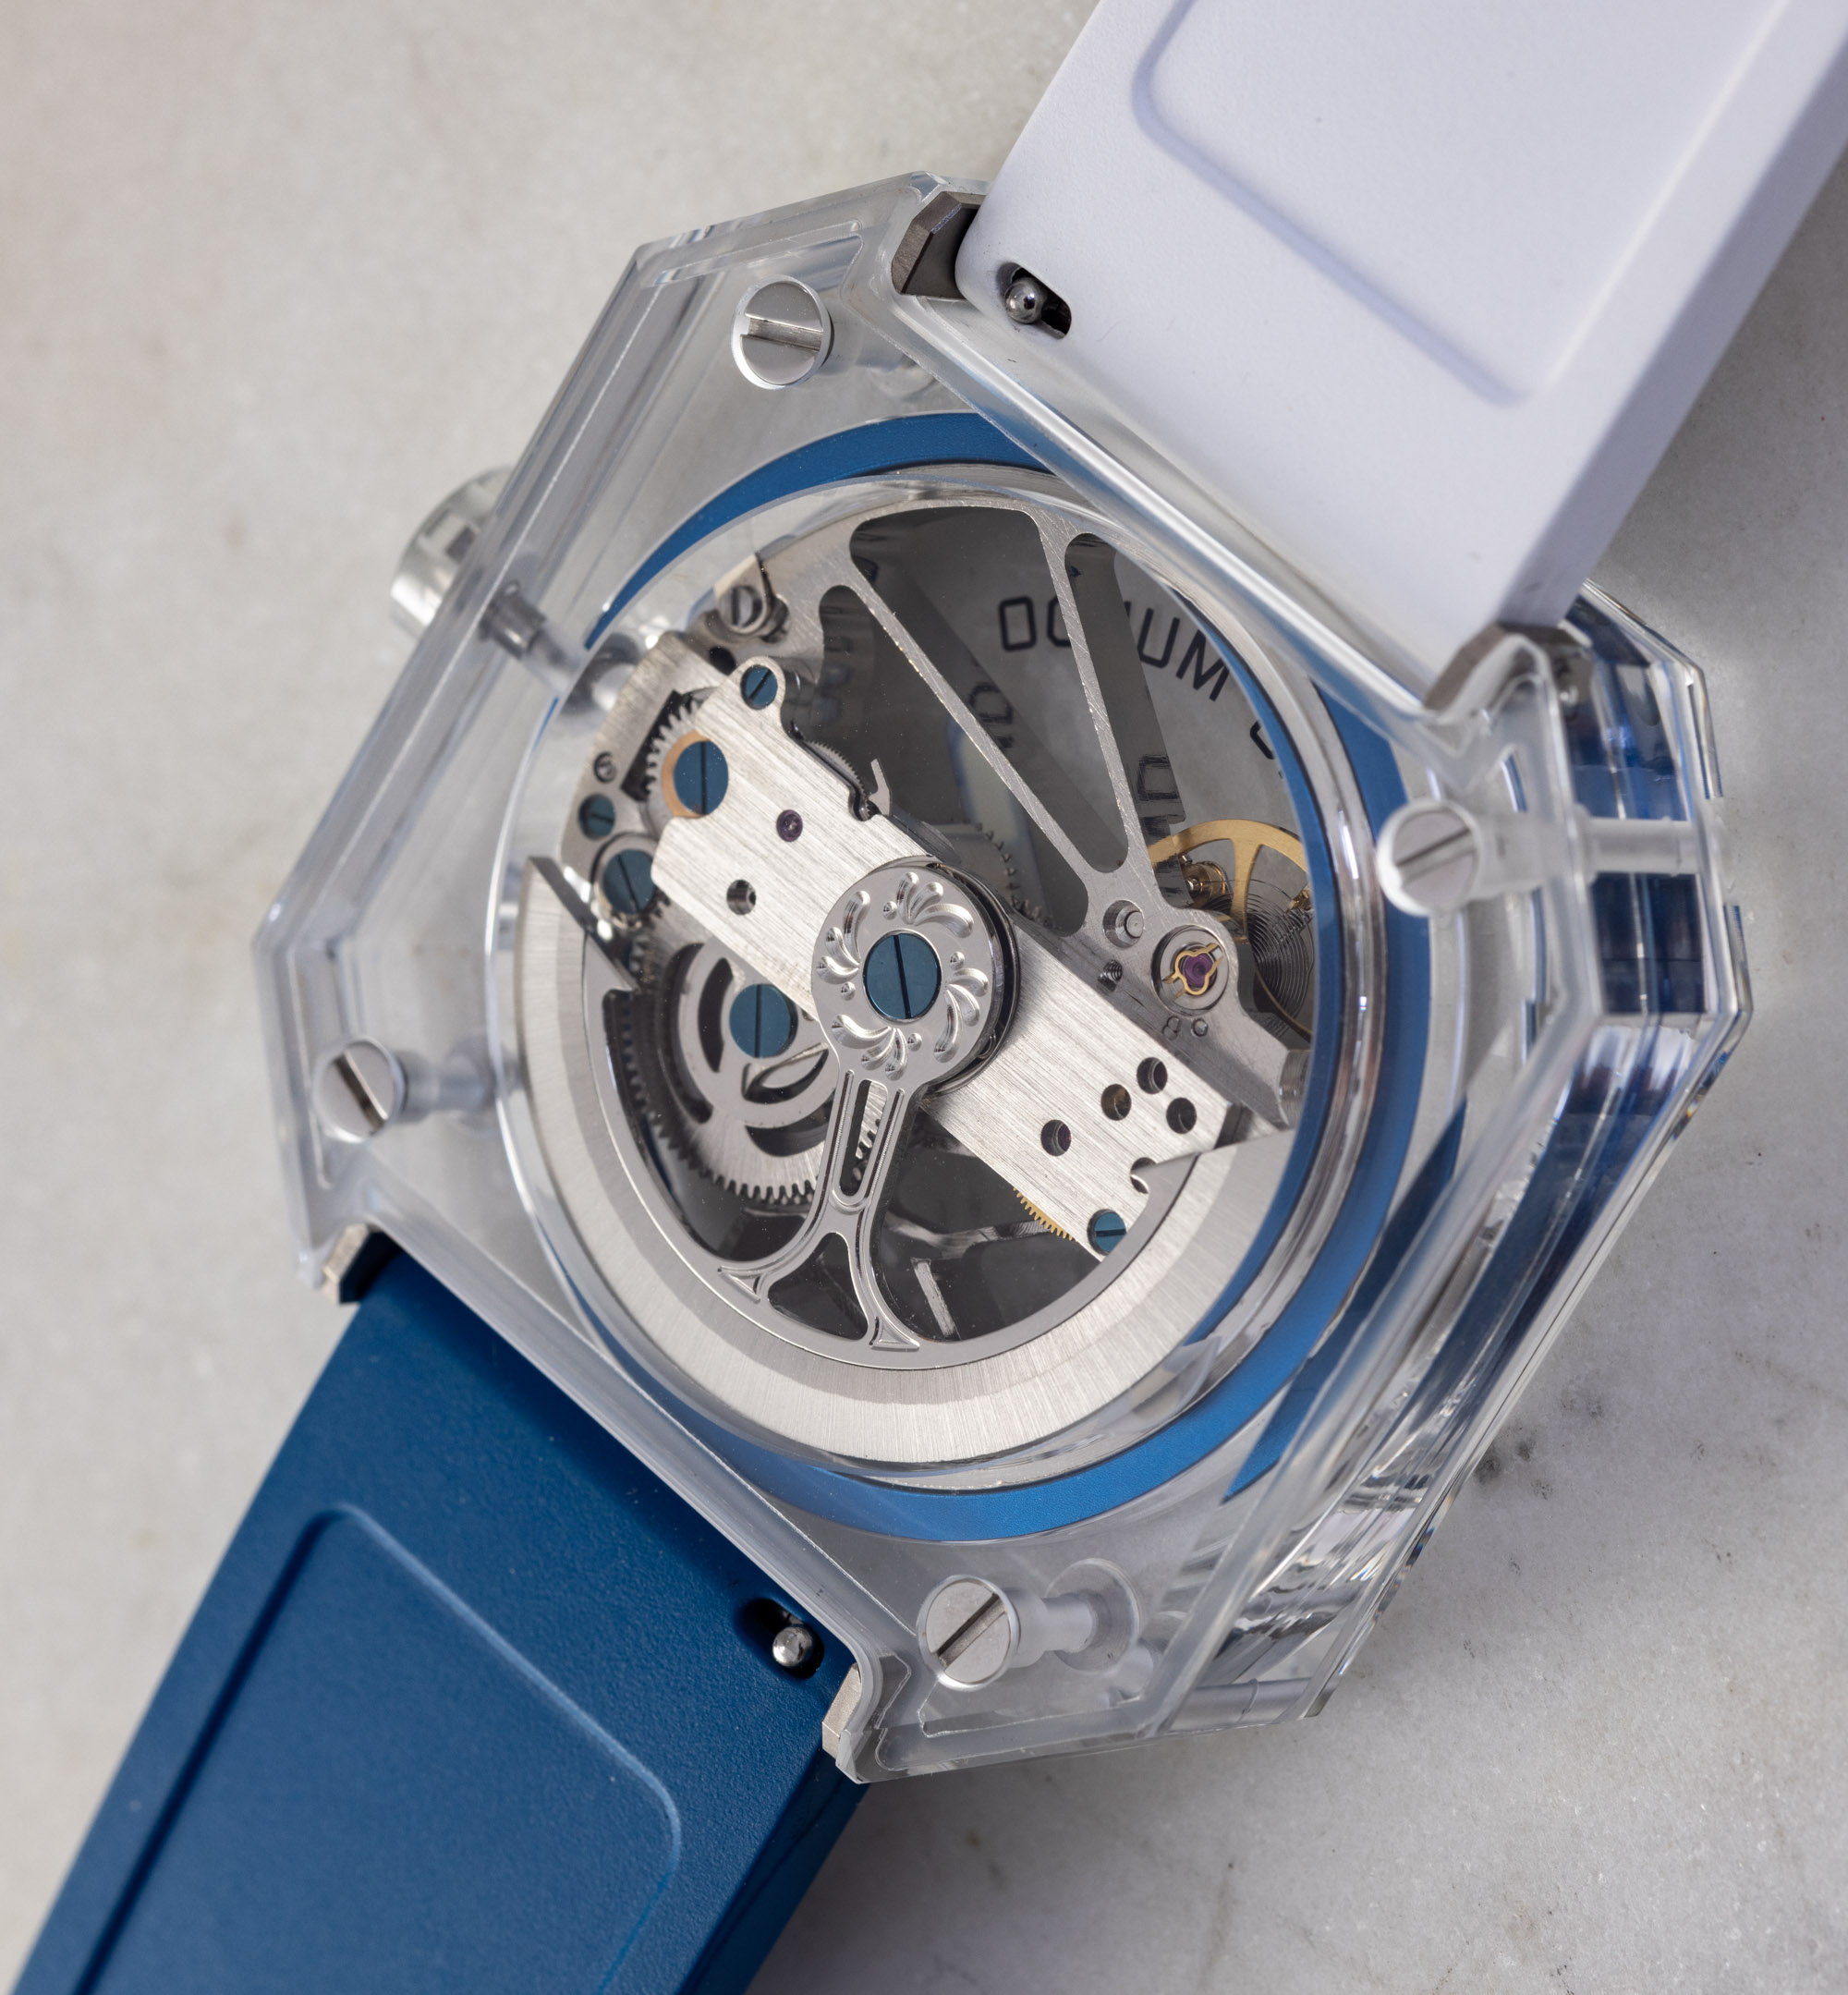 Прозрачные часы Ritmo Mundo Pegasus Crystal перезапускают бренд